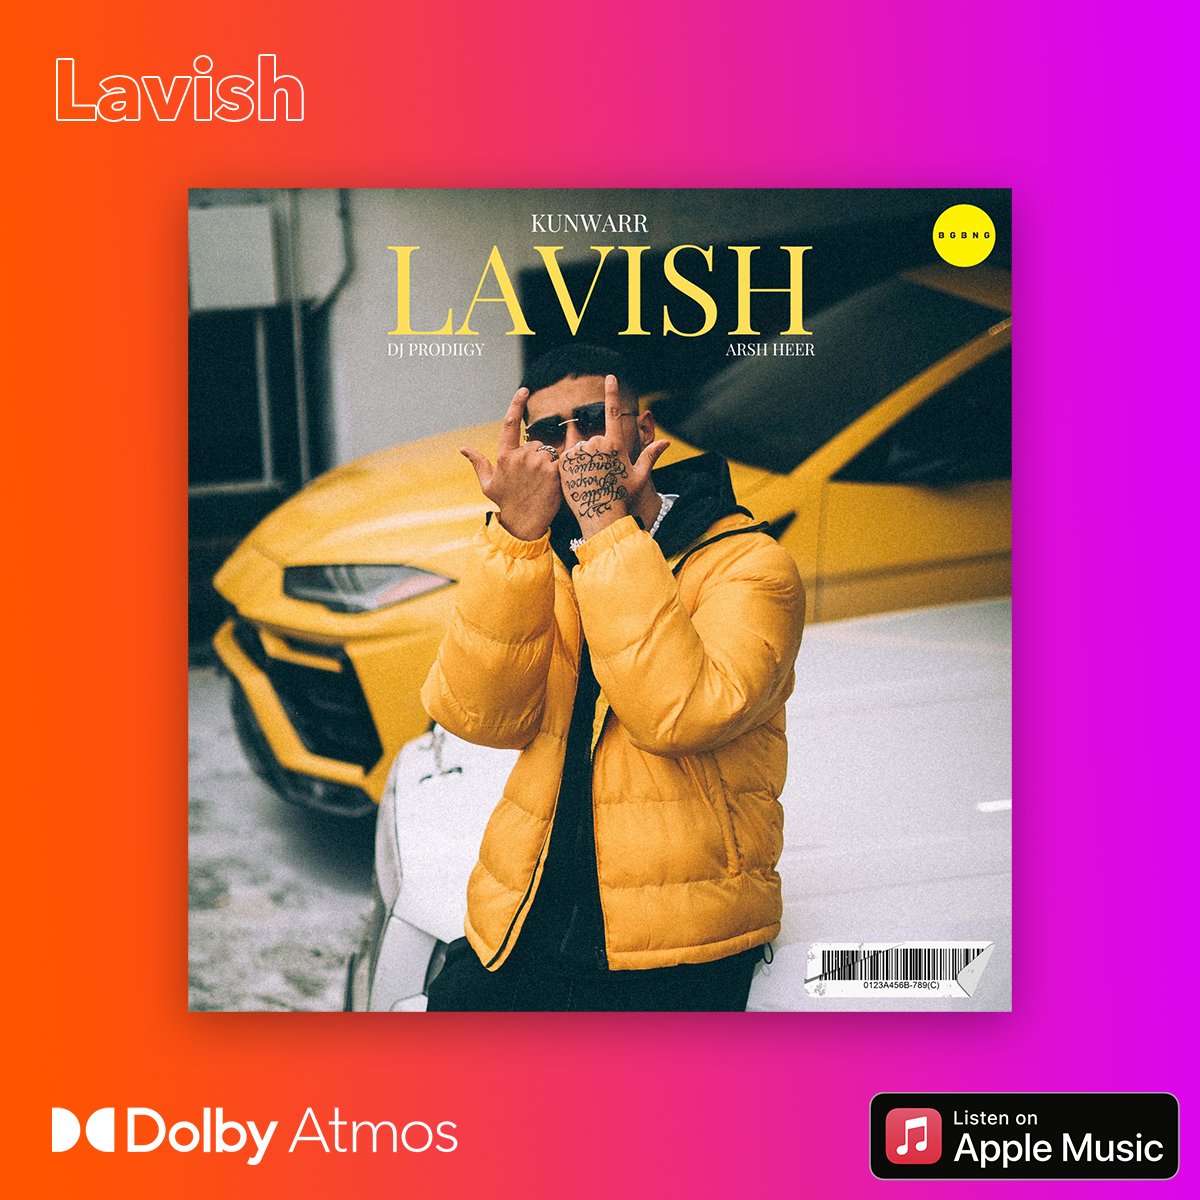 Listen to Lavish in the immersive sound of #DolbyAtmos on @AppleMusic @Kunwarrmusic @bgbngmusic @DJPRODiiGY @arshh33r @JStatikMusic #AbhishekGautam #MusicInDolby